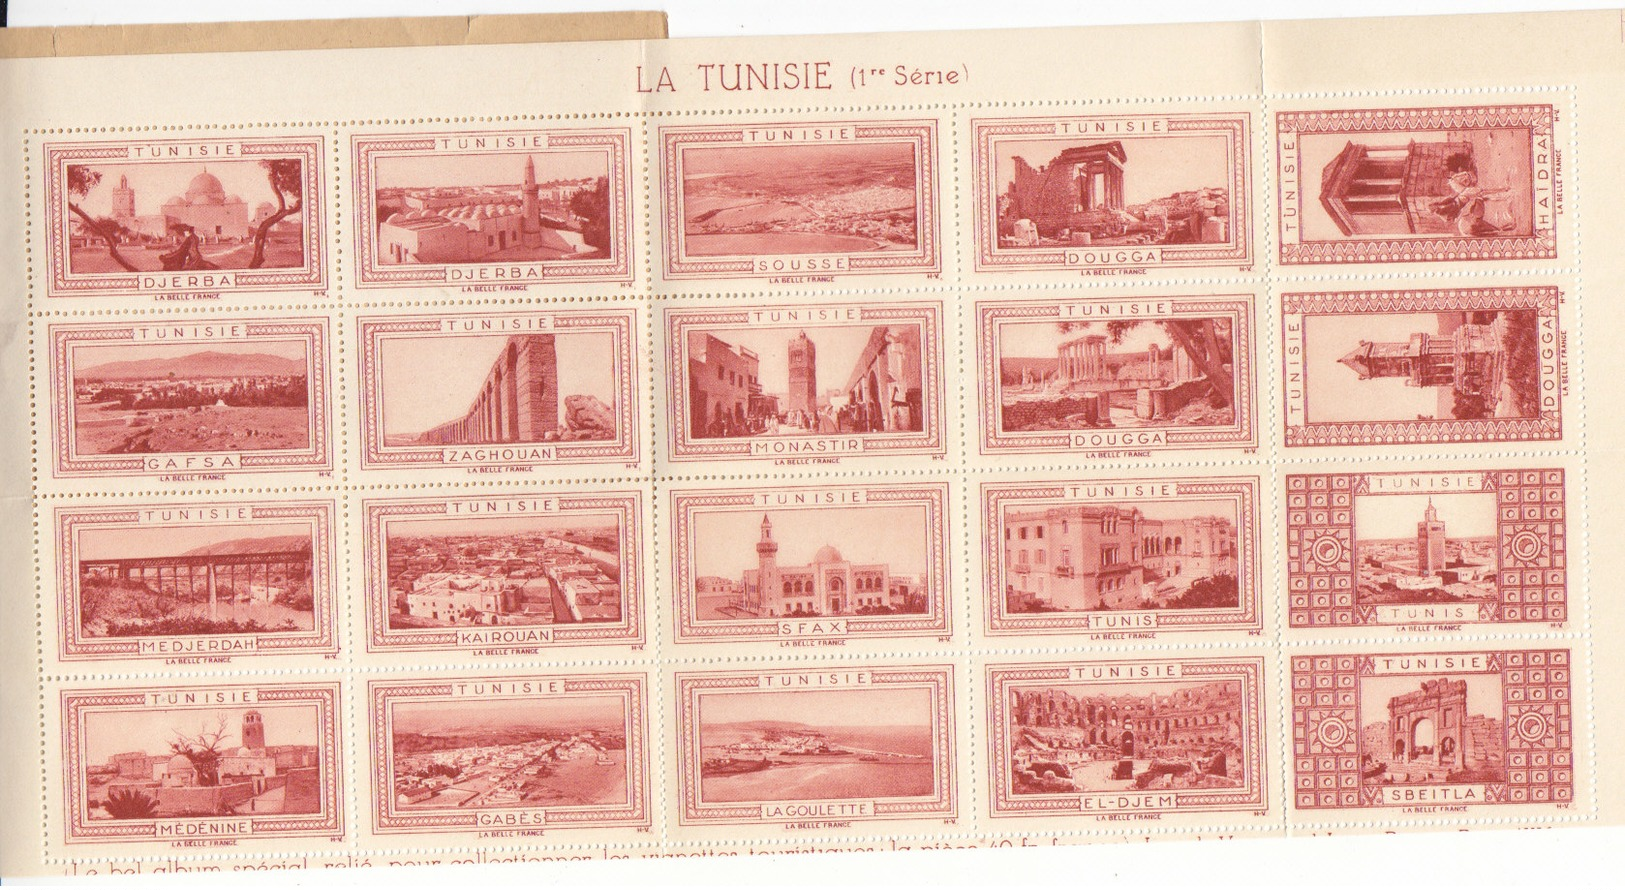 20 Vignettes Tunisie , Au Profit De La Chapelle St Benoit à Issy Les Moulineaux , Hauts De Seine ,2 Scans - Blocks & Sheetlets & Booklets